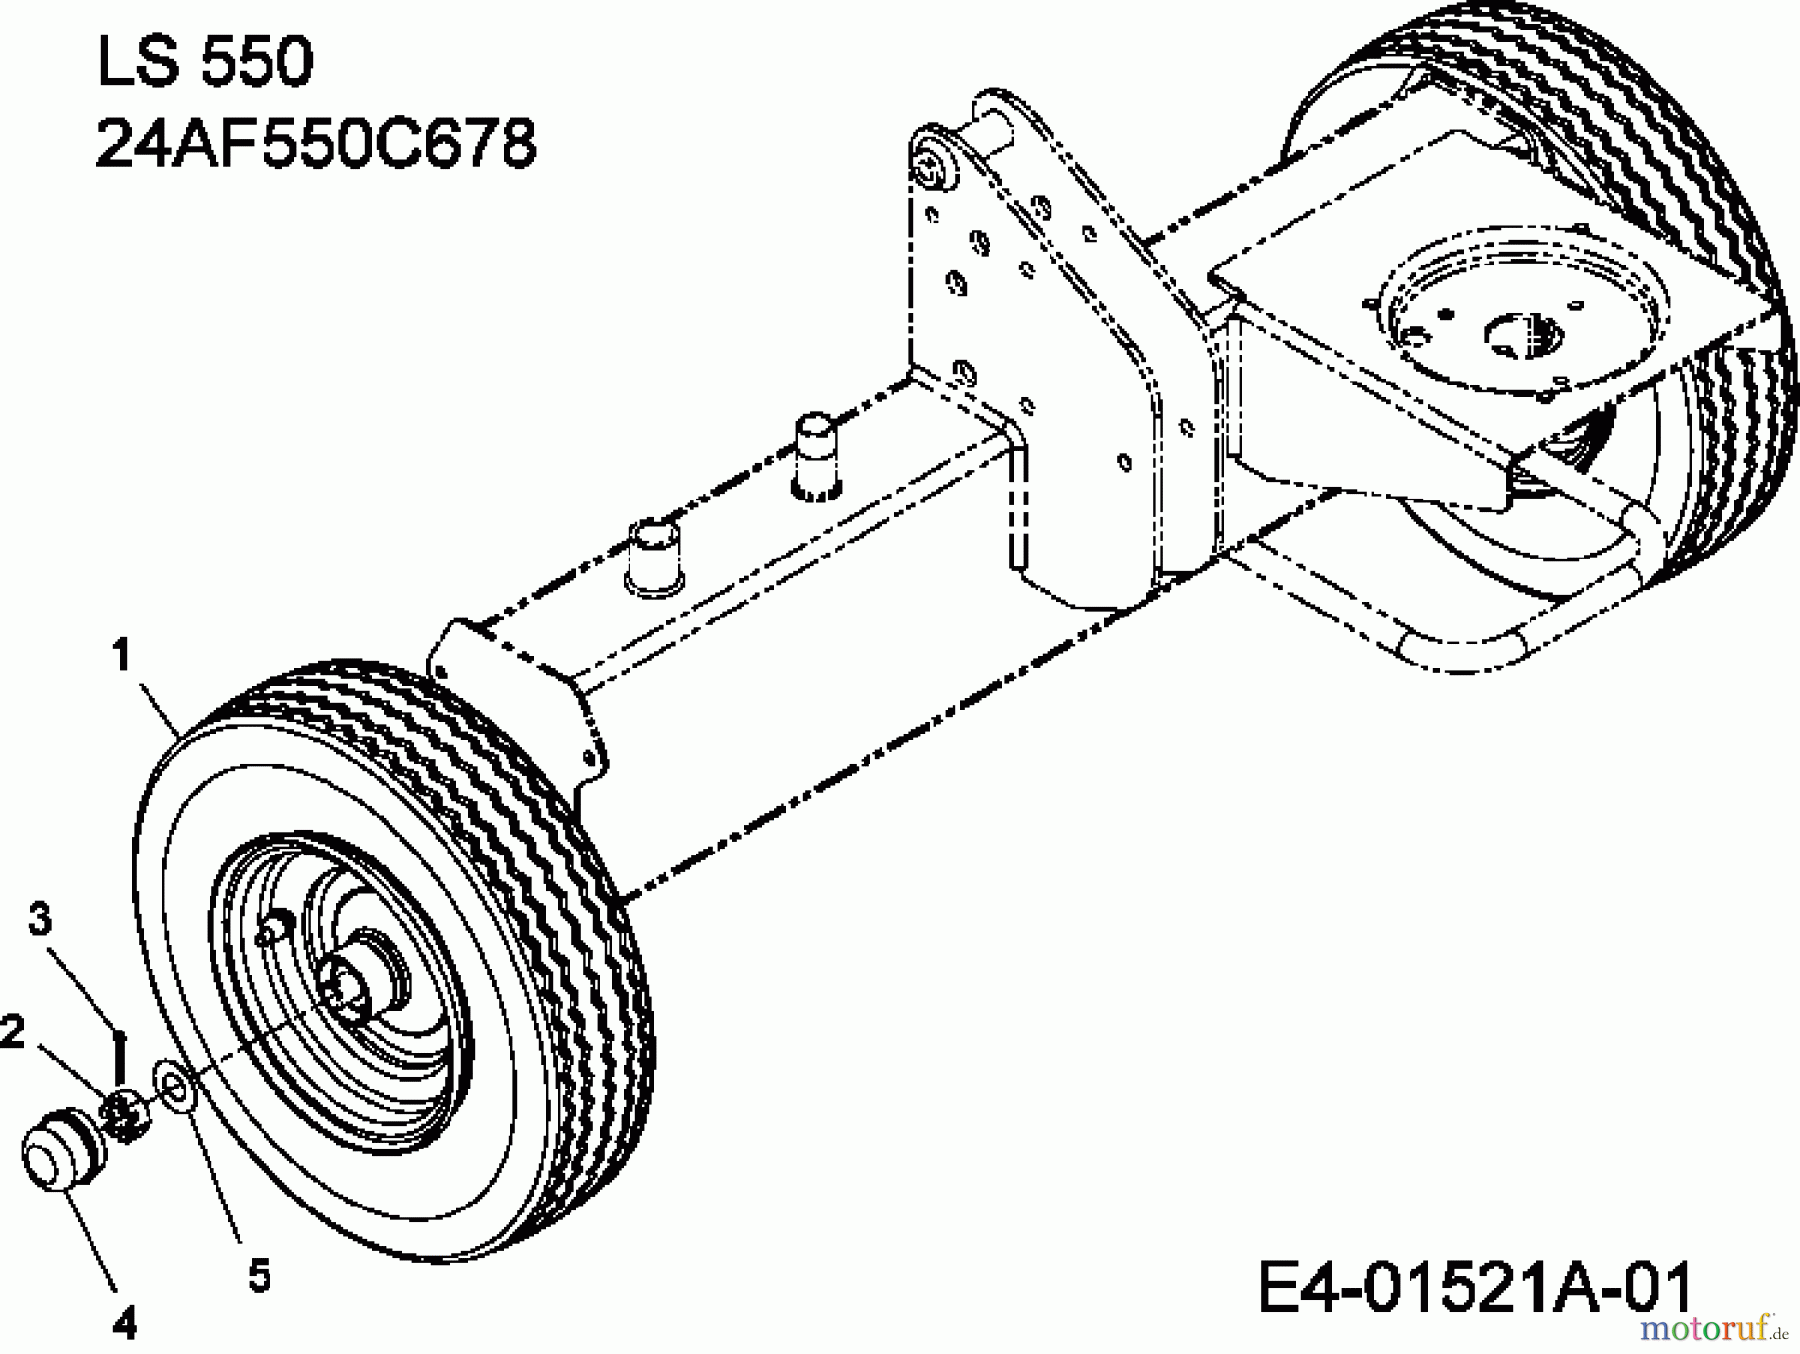  MTD Log splitter LS 550 24AF550C678  (2012) Wheels